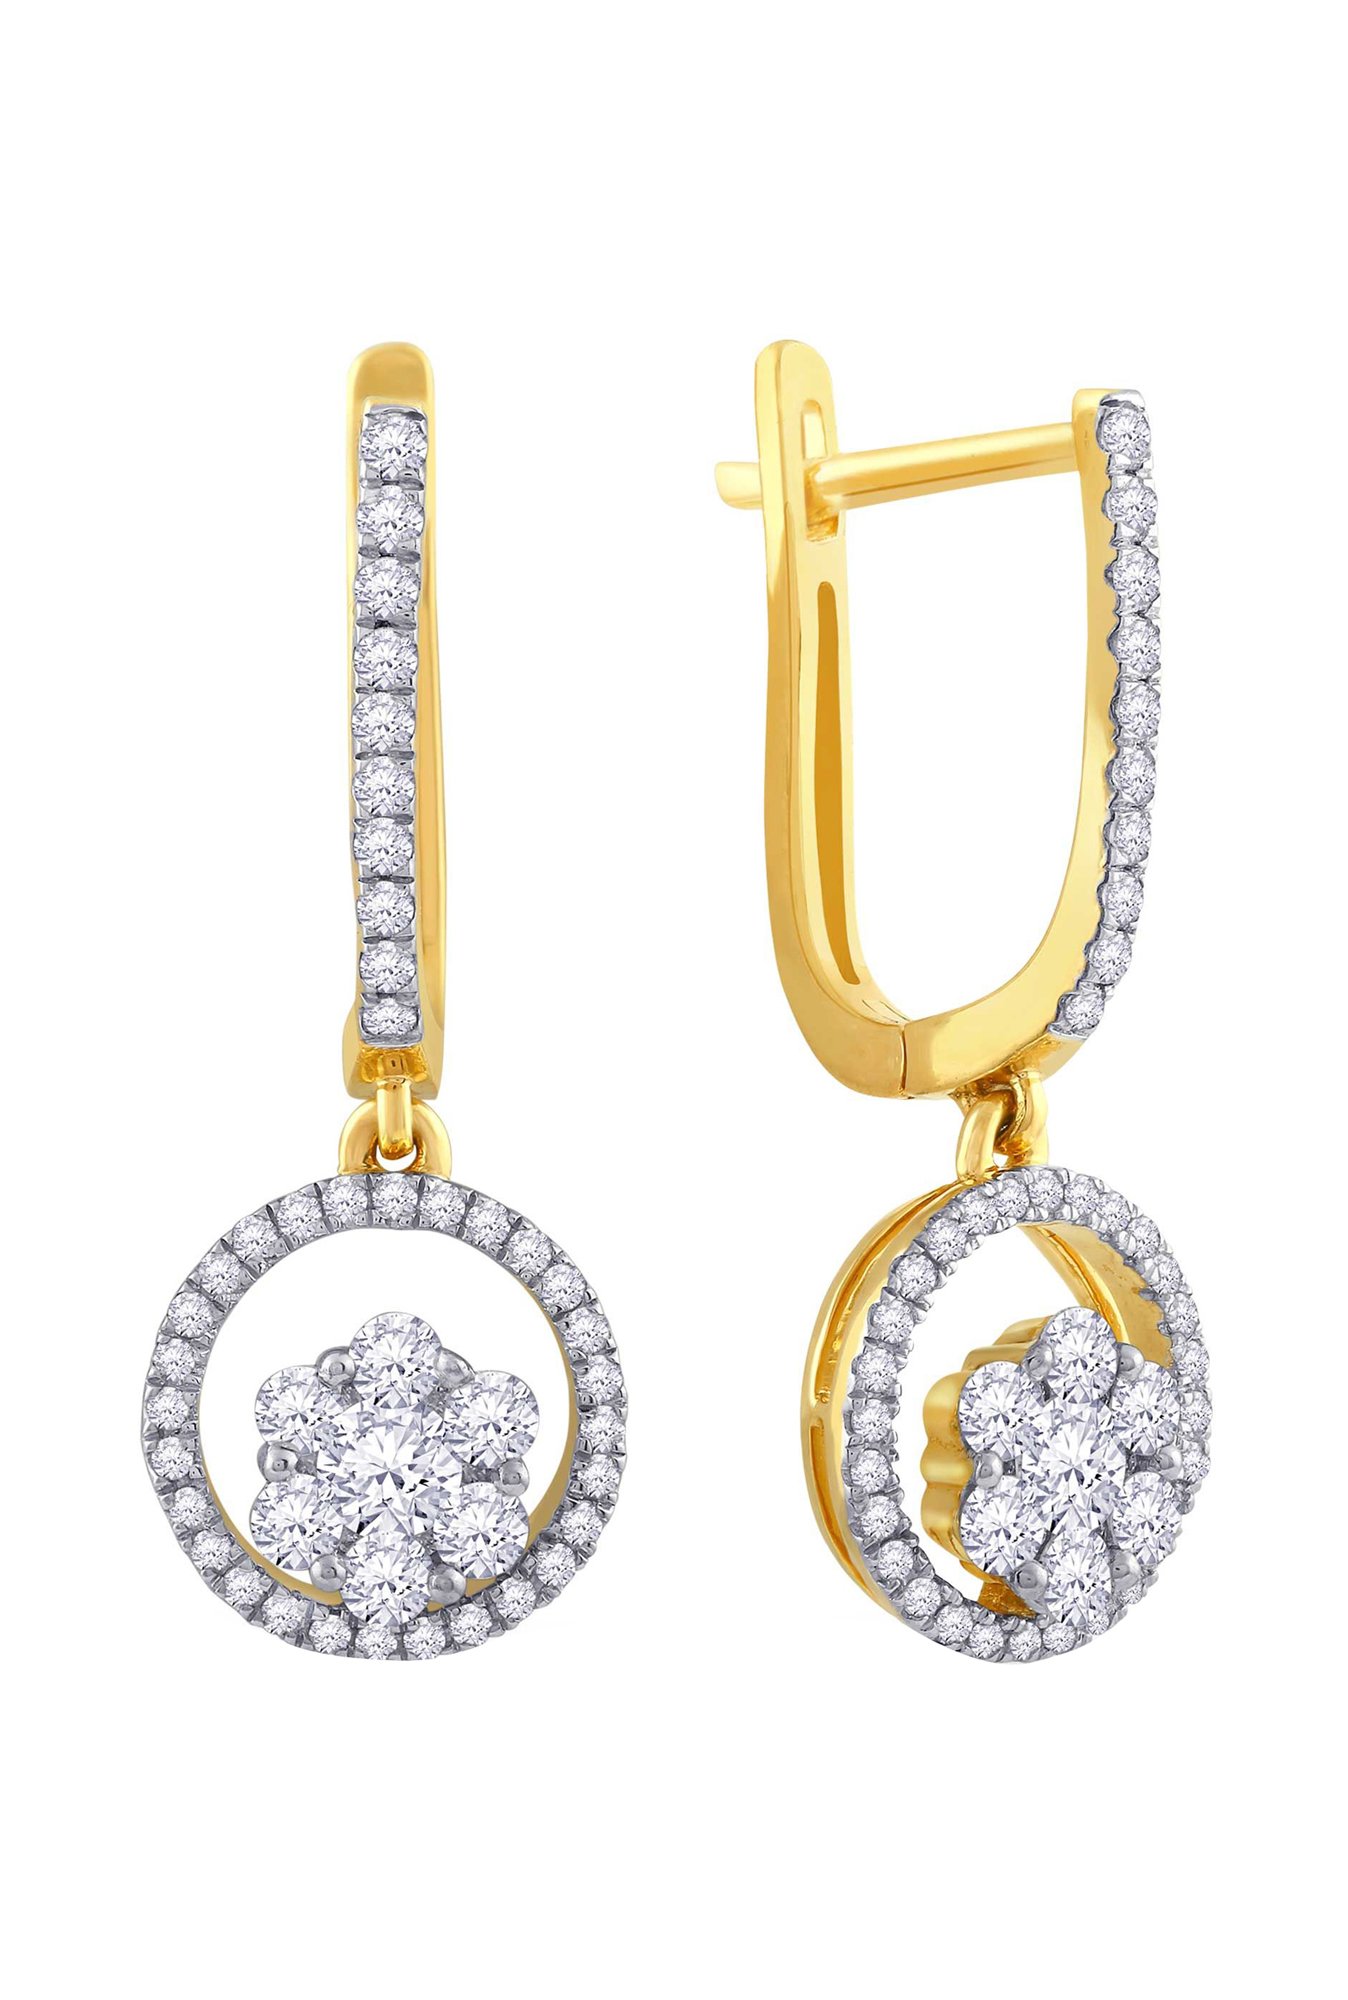 Diamond Earrings | Studs, Drop and Hoop Earrings | Forevermark